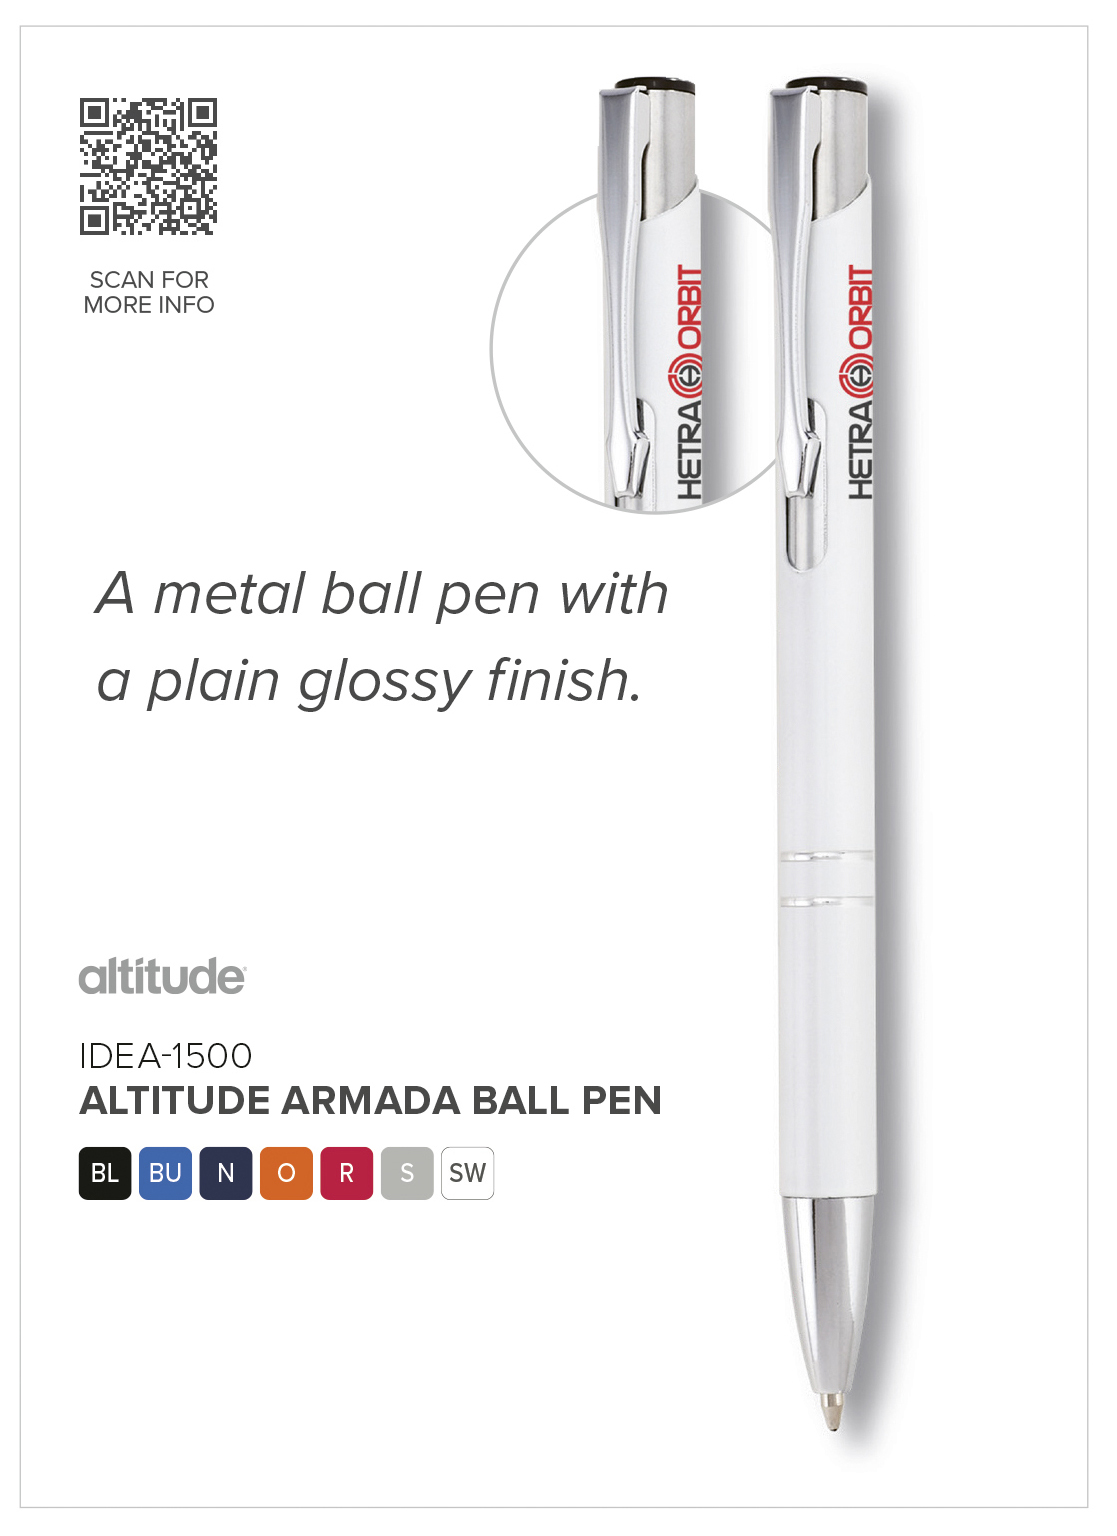 Altitude Armada Ball Pen